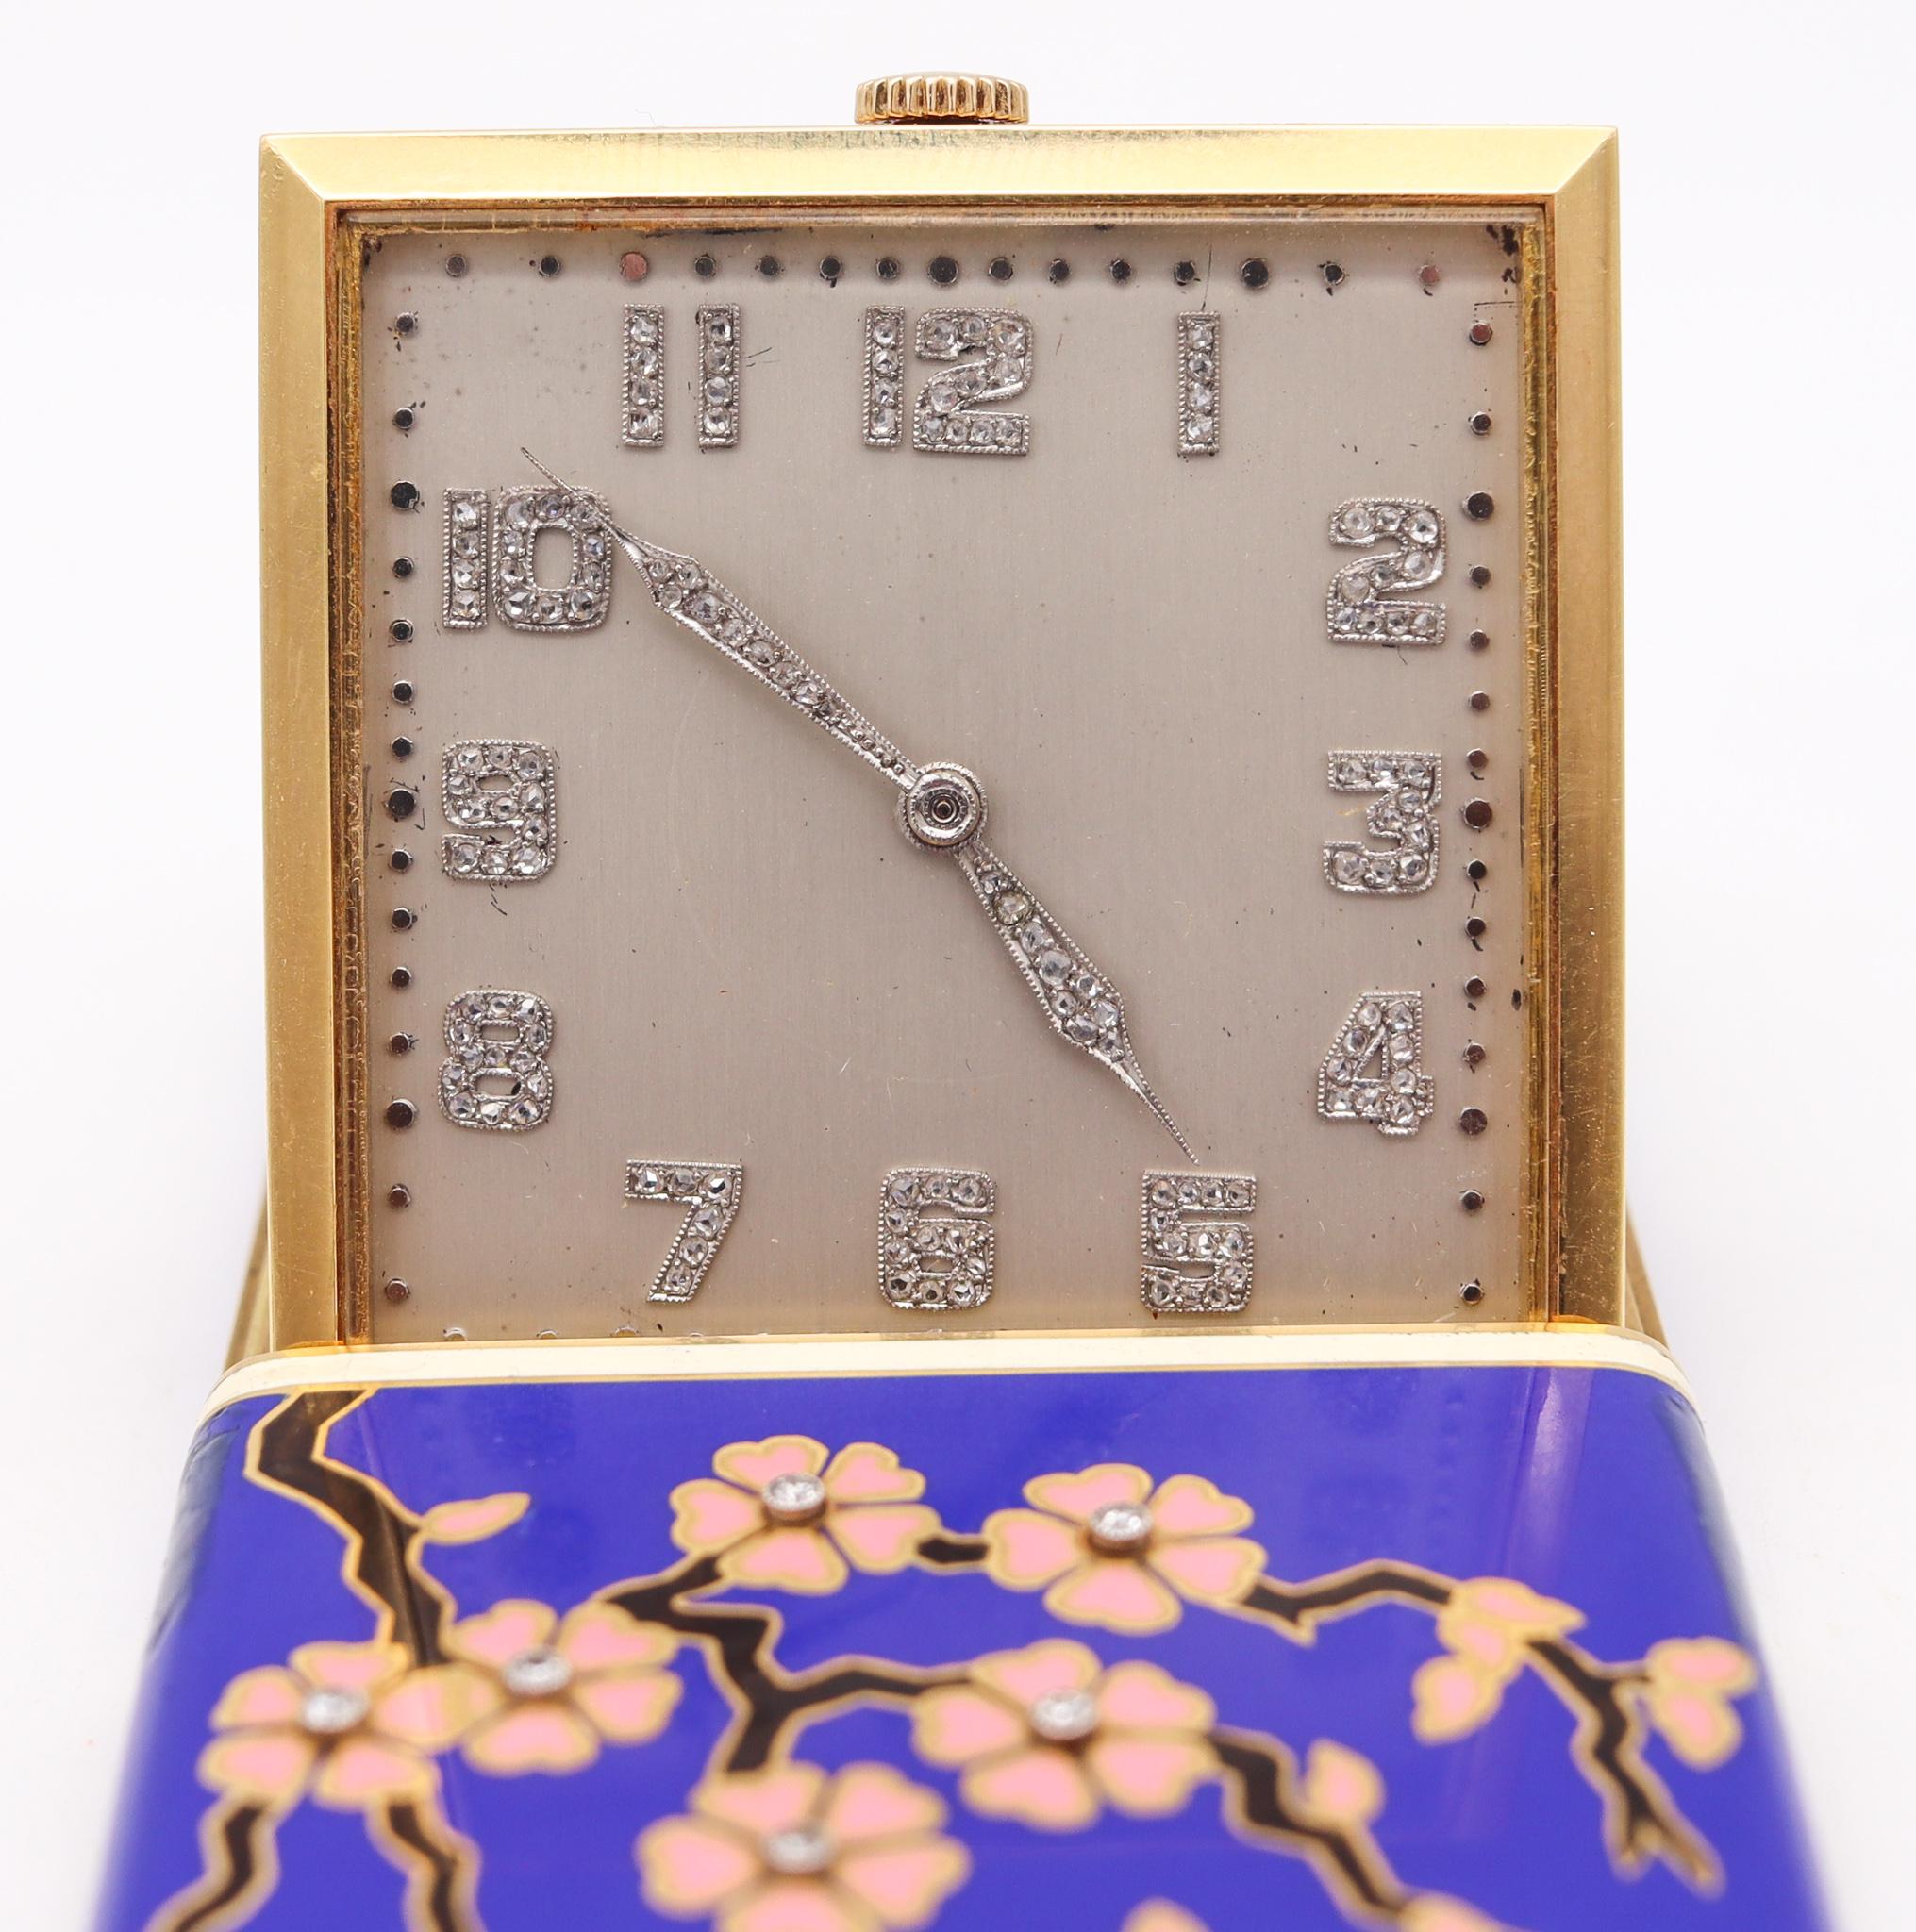 Une horloge de voyage conçue par Cress Arrow Co.

Une incroyable horloge de bureau de voyage, créée en Amérique pendant la période art déco par les fabricants de bijoux et de montres de luxe Cress Arrow Co. en 1925. Cette fabuleuse pièce flamboyante